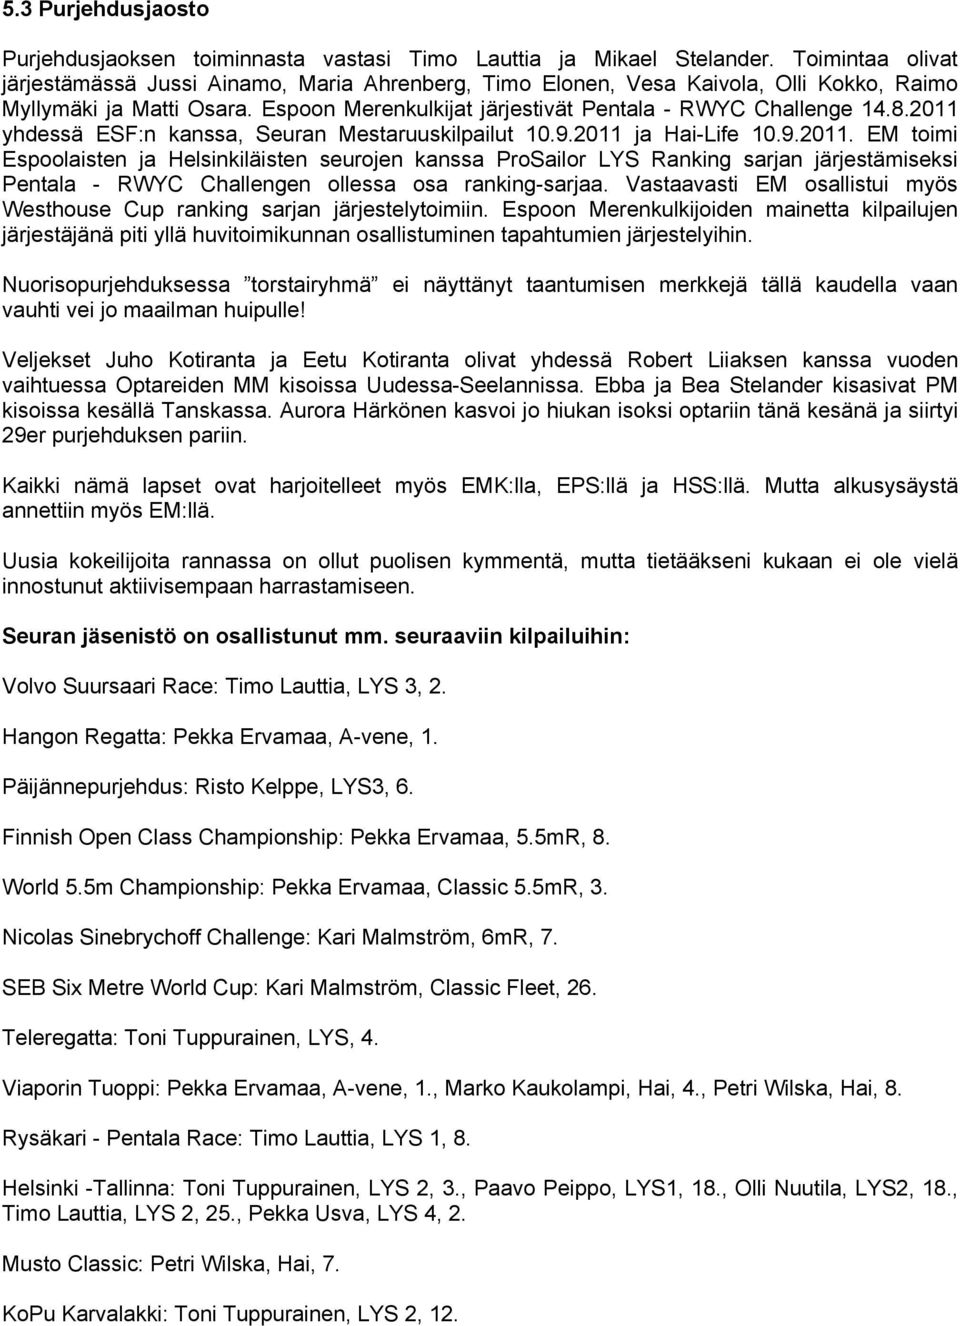 2011 yhdessä ESF:n kanssa, Seuran Mestaruuskilpailut 10.9.2011 ja Hai-Life 10.9.2011. EM toimi Espoolaisten ja Helsinkiläisten seurojen kanssa ProSailor LYS Ranking sarjan järjestämiseksi Pentala - RWYC Challengen ollessa osa ranking-sarjaa.